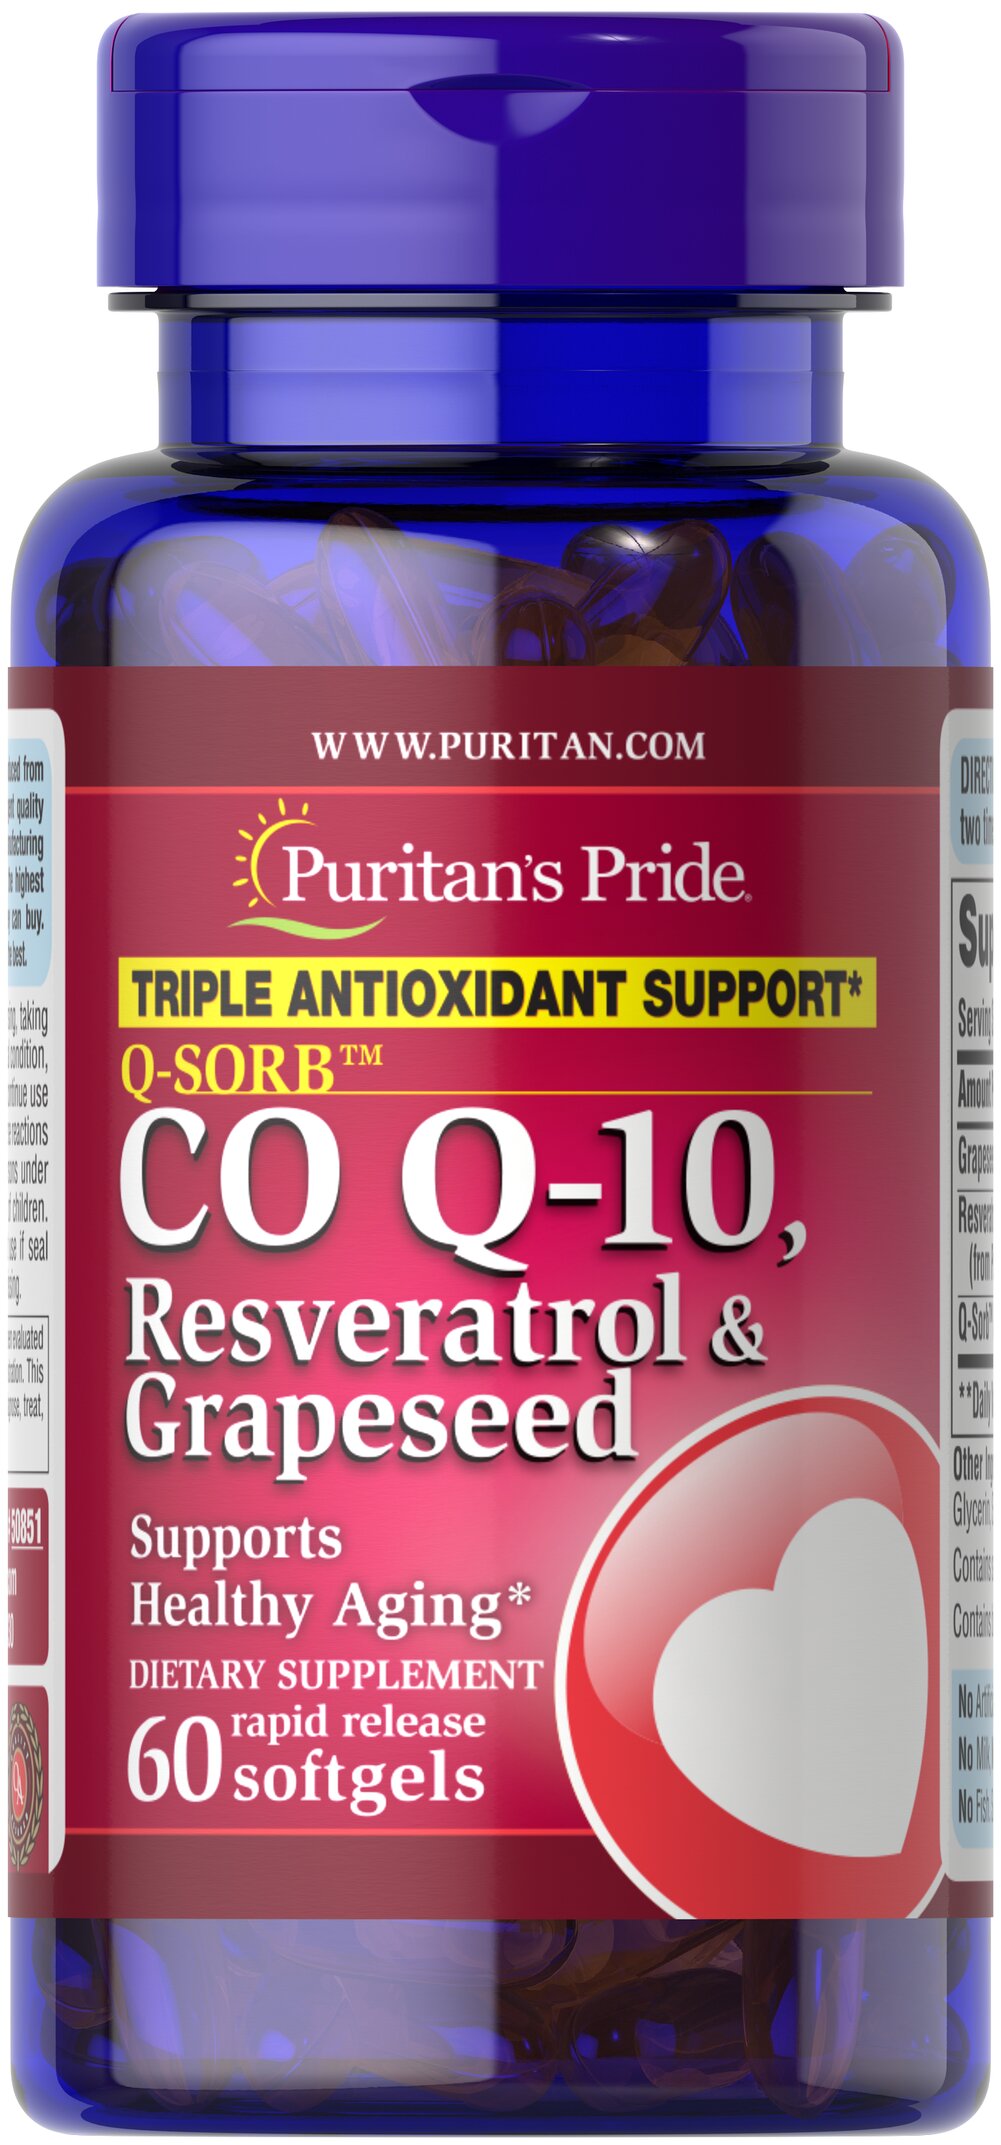 Q-SORB™輔酶Q-10、白藜蘆醇與葡萄籽